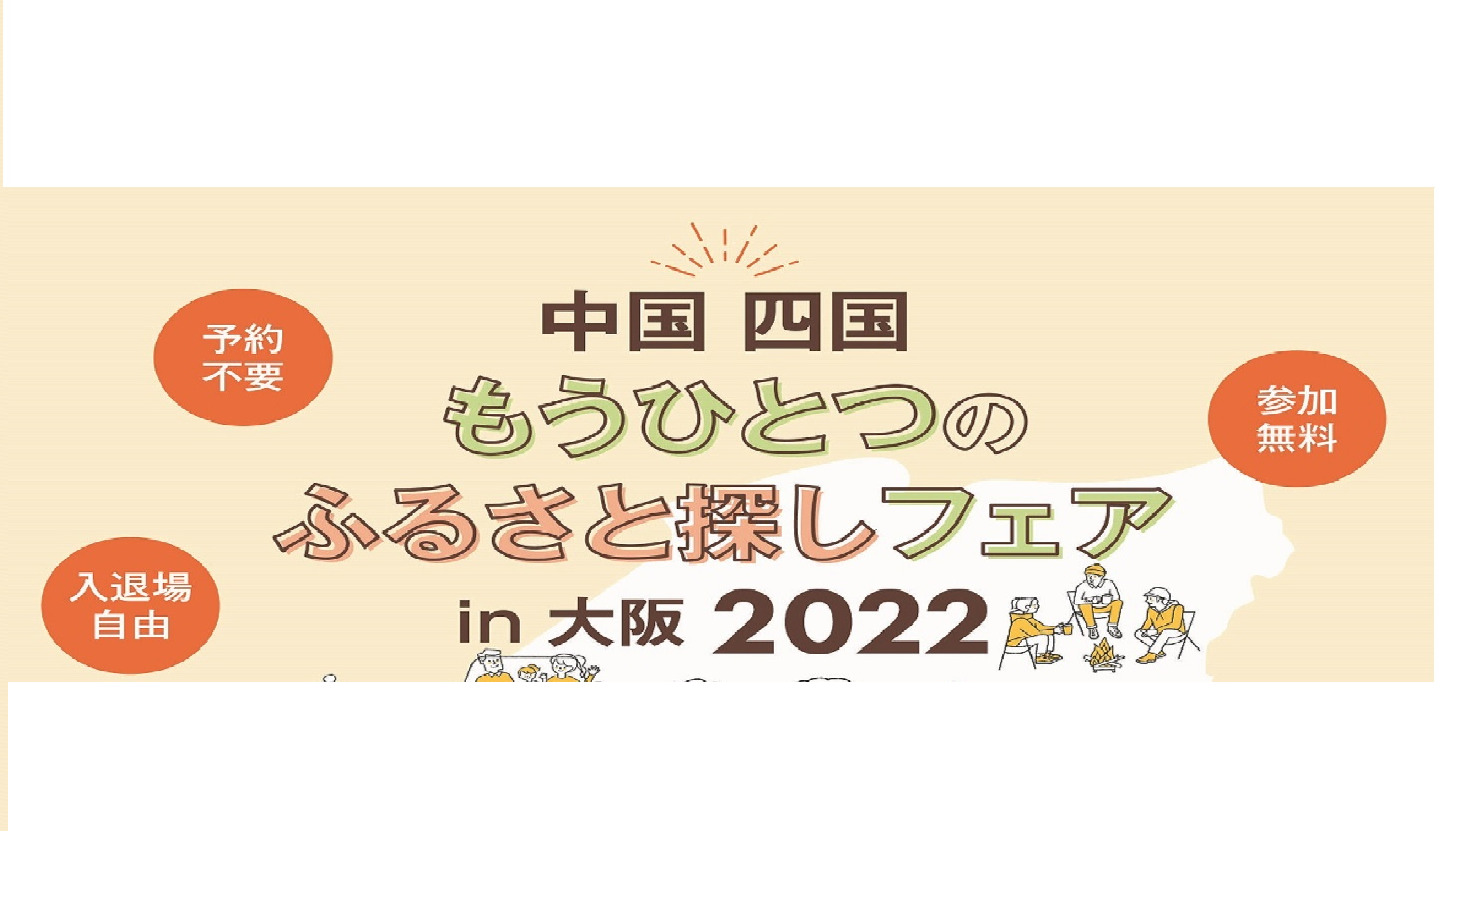 「中国 四国 もうひとつのふるさと探しフェア in 大阪2022」に出展します！（周防大島町）